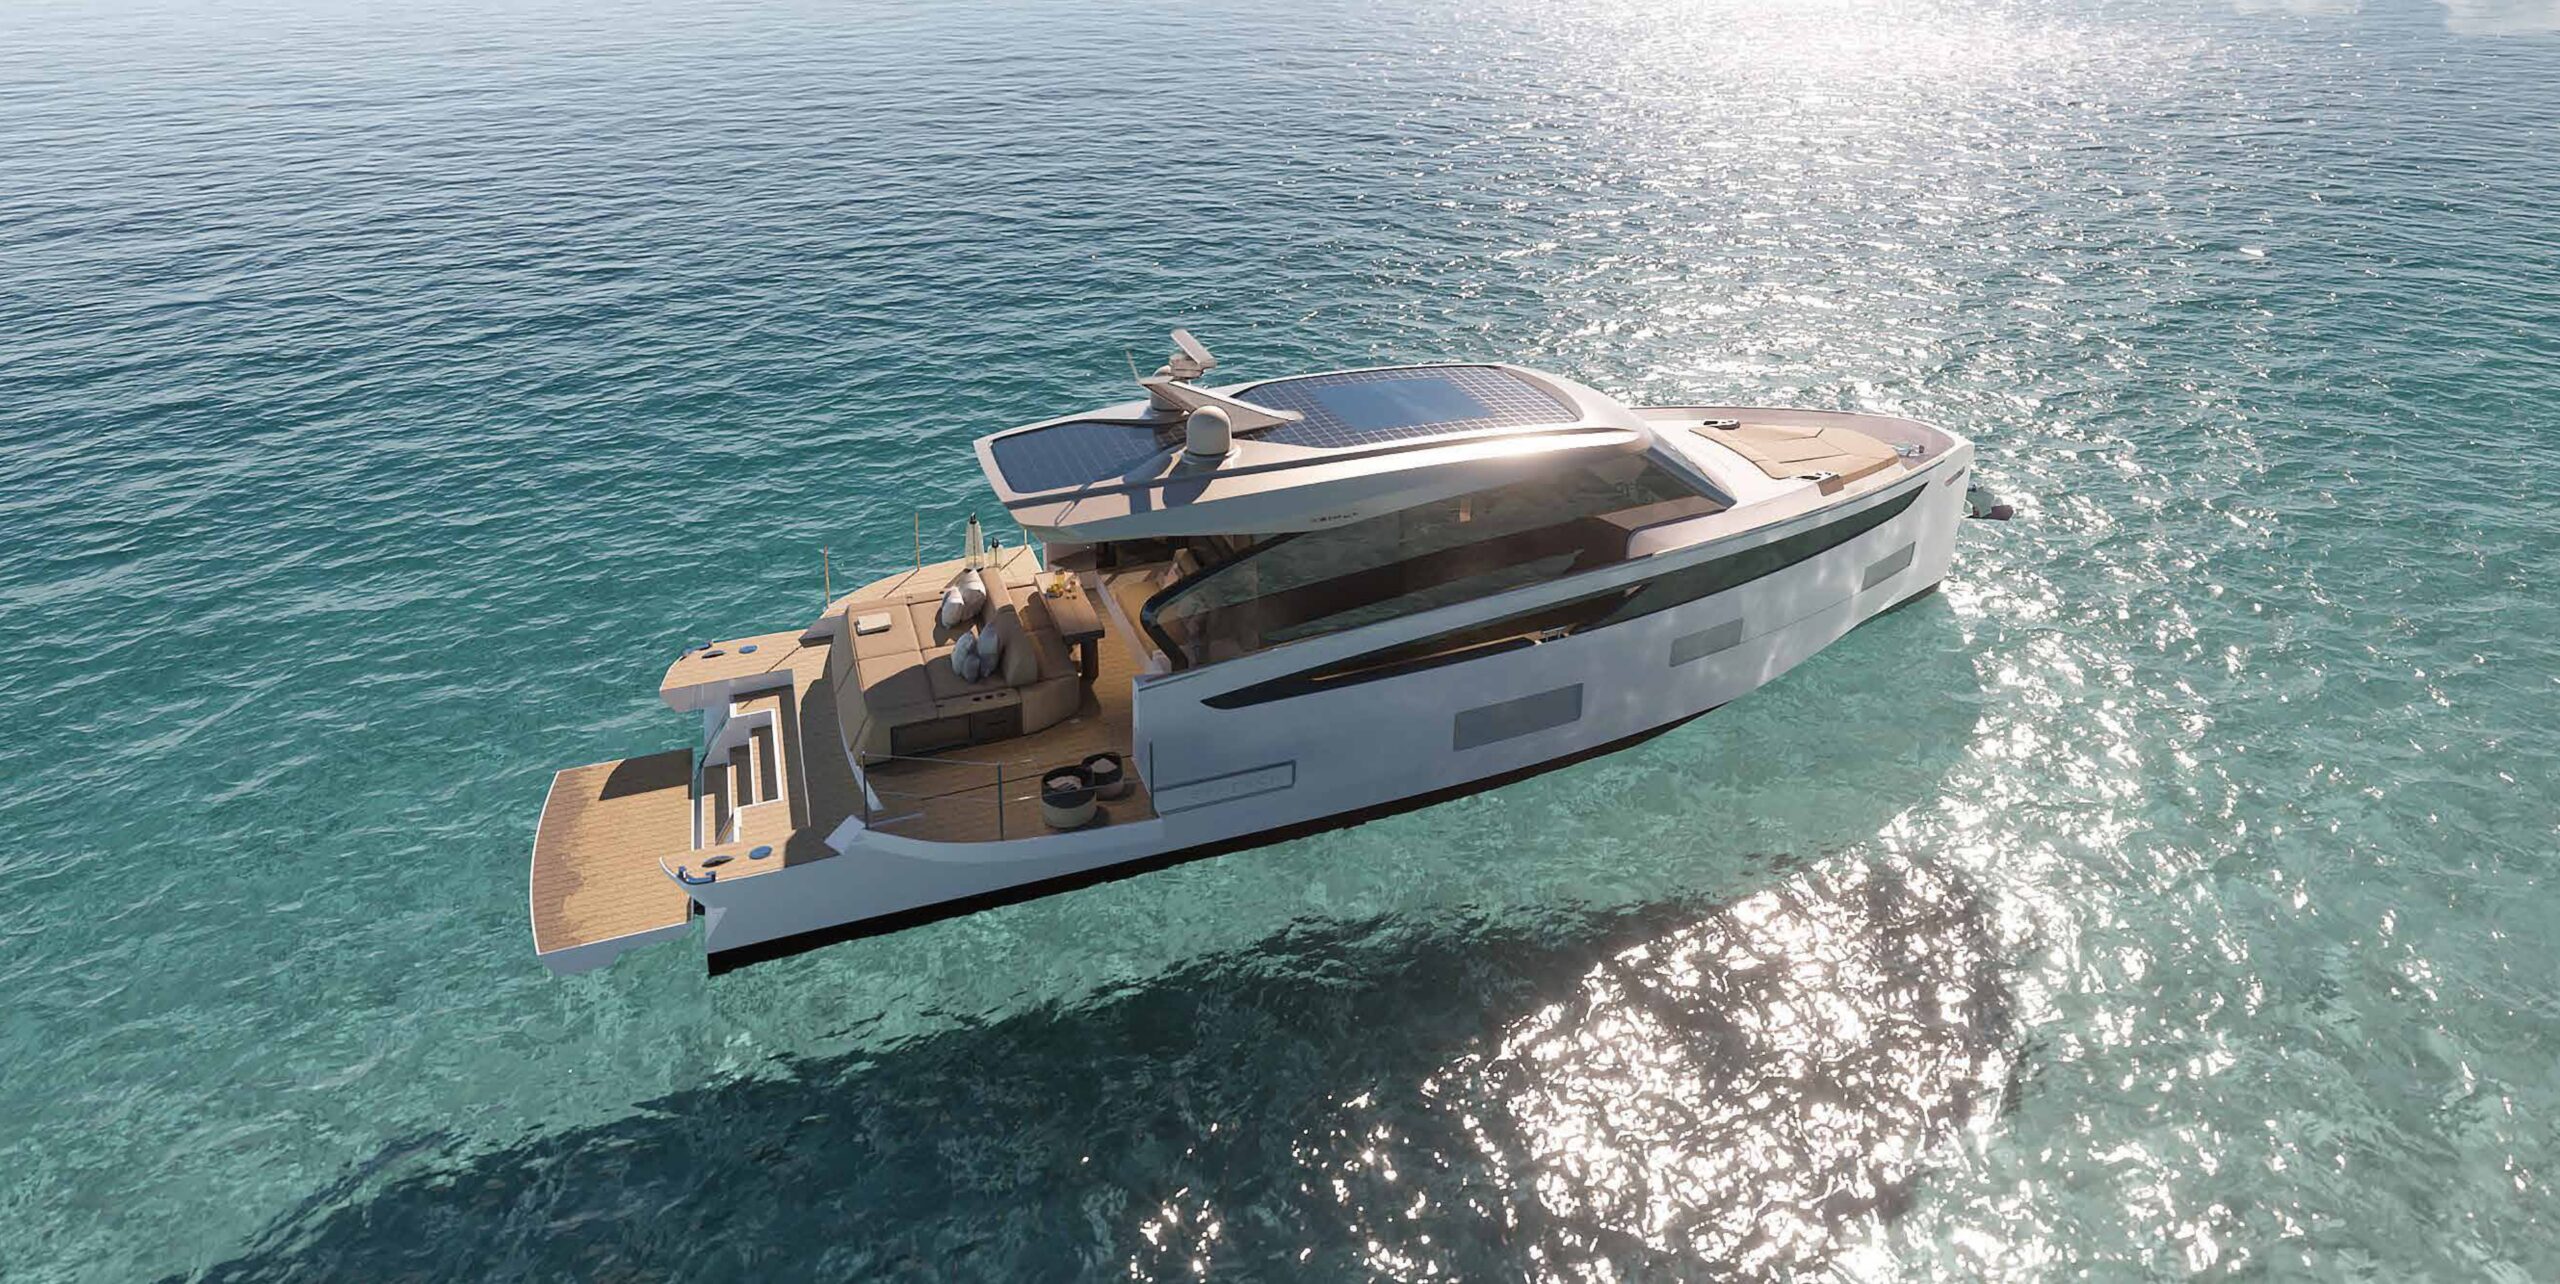 Azimut Yachts revela iate híbrido revolucionário com motores híbridos e placa fotovoltaica que reduz em 40% as emissões de CO2